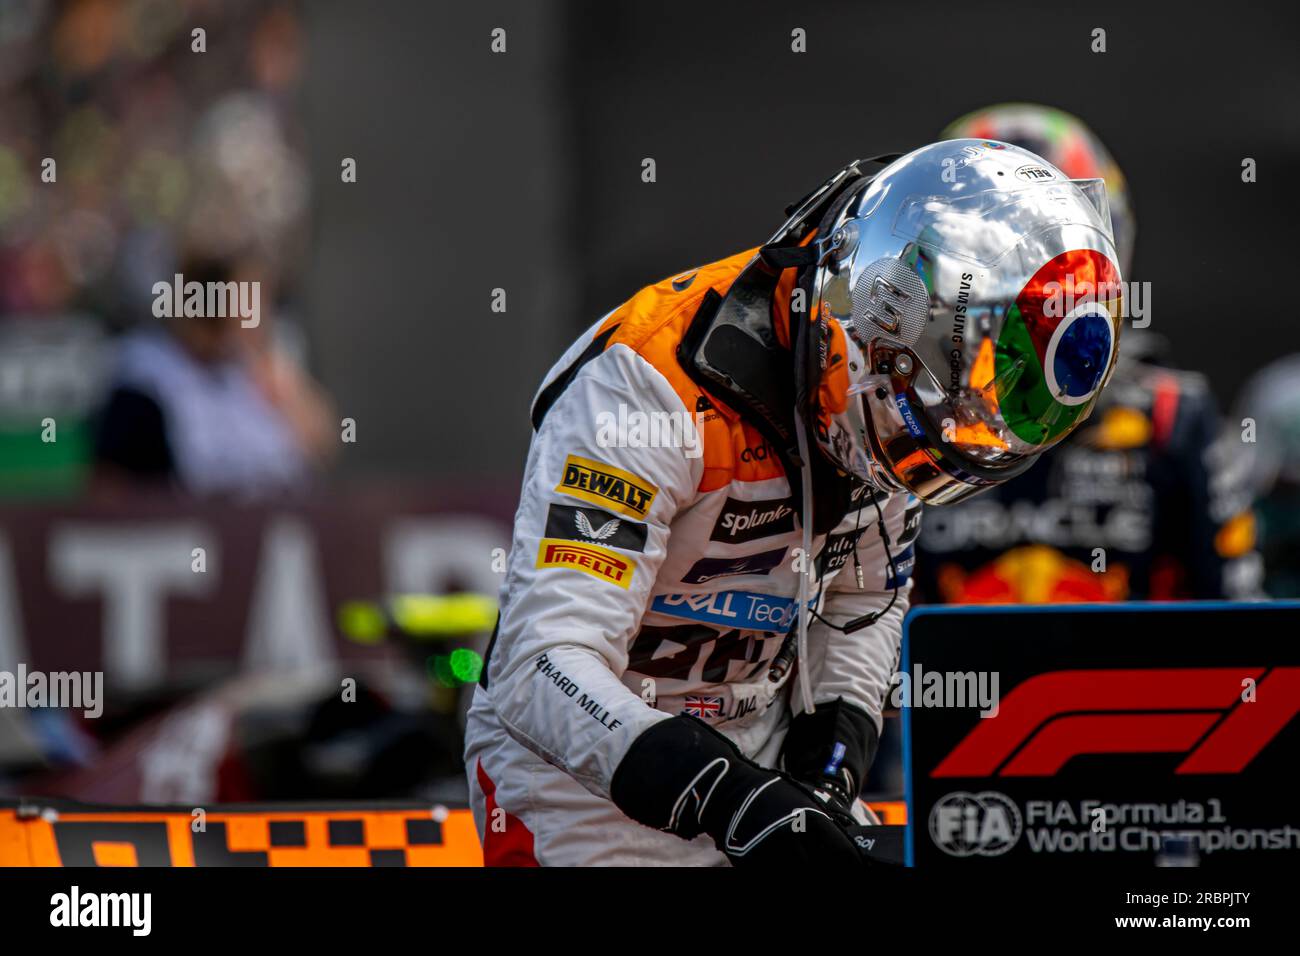 Silverstone, Royaume-Uni, juillet 09, Lando Norris, du Royaume-Uni, concourt pour McLaren F1. Jour de la course, ronde 11 du championnat de Formule 1 2023. Crédit : Michael Potts/Alamy Live News Banque D'Images